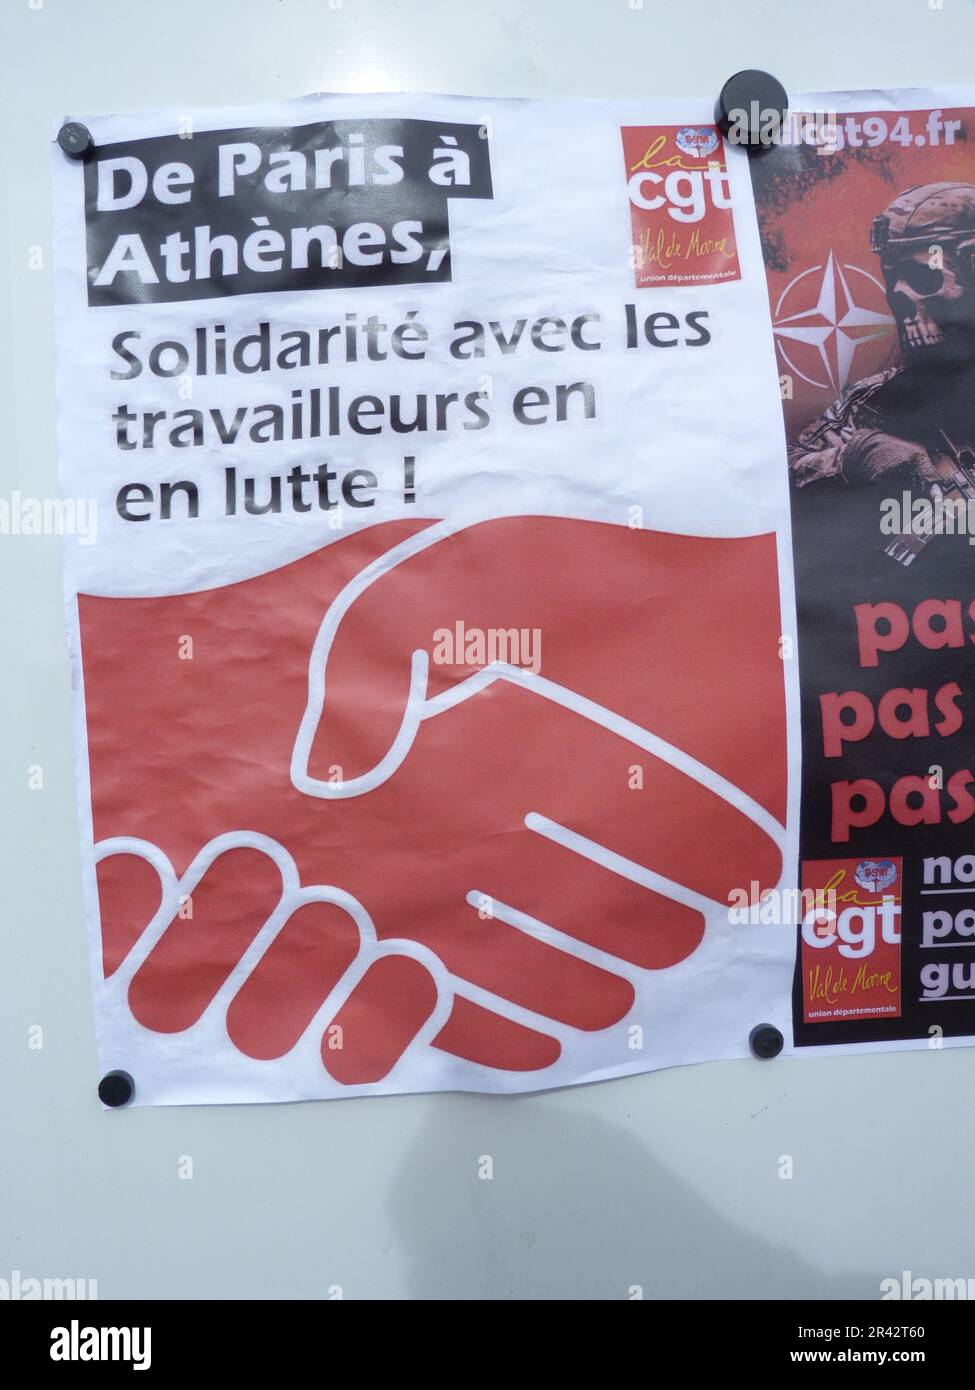 UNE affiche à PARIS DE PARIS à ATHÈNES, SOLIDARITÉ AVEC LES TRAVAILLEURS EN LUTTE! Stockfoto